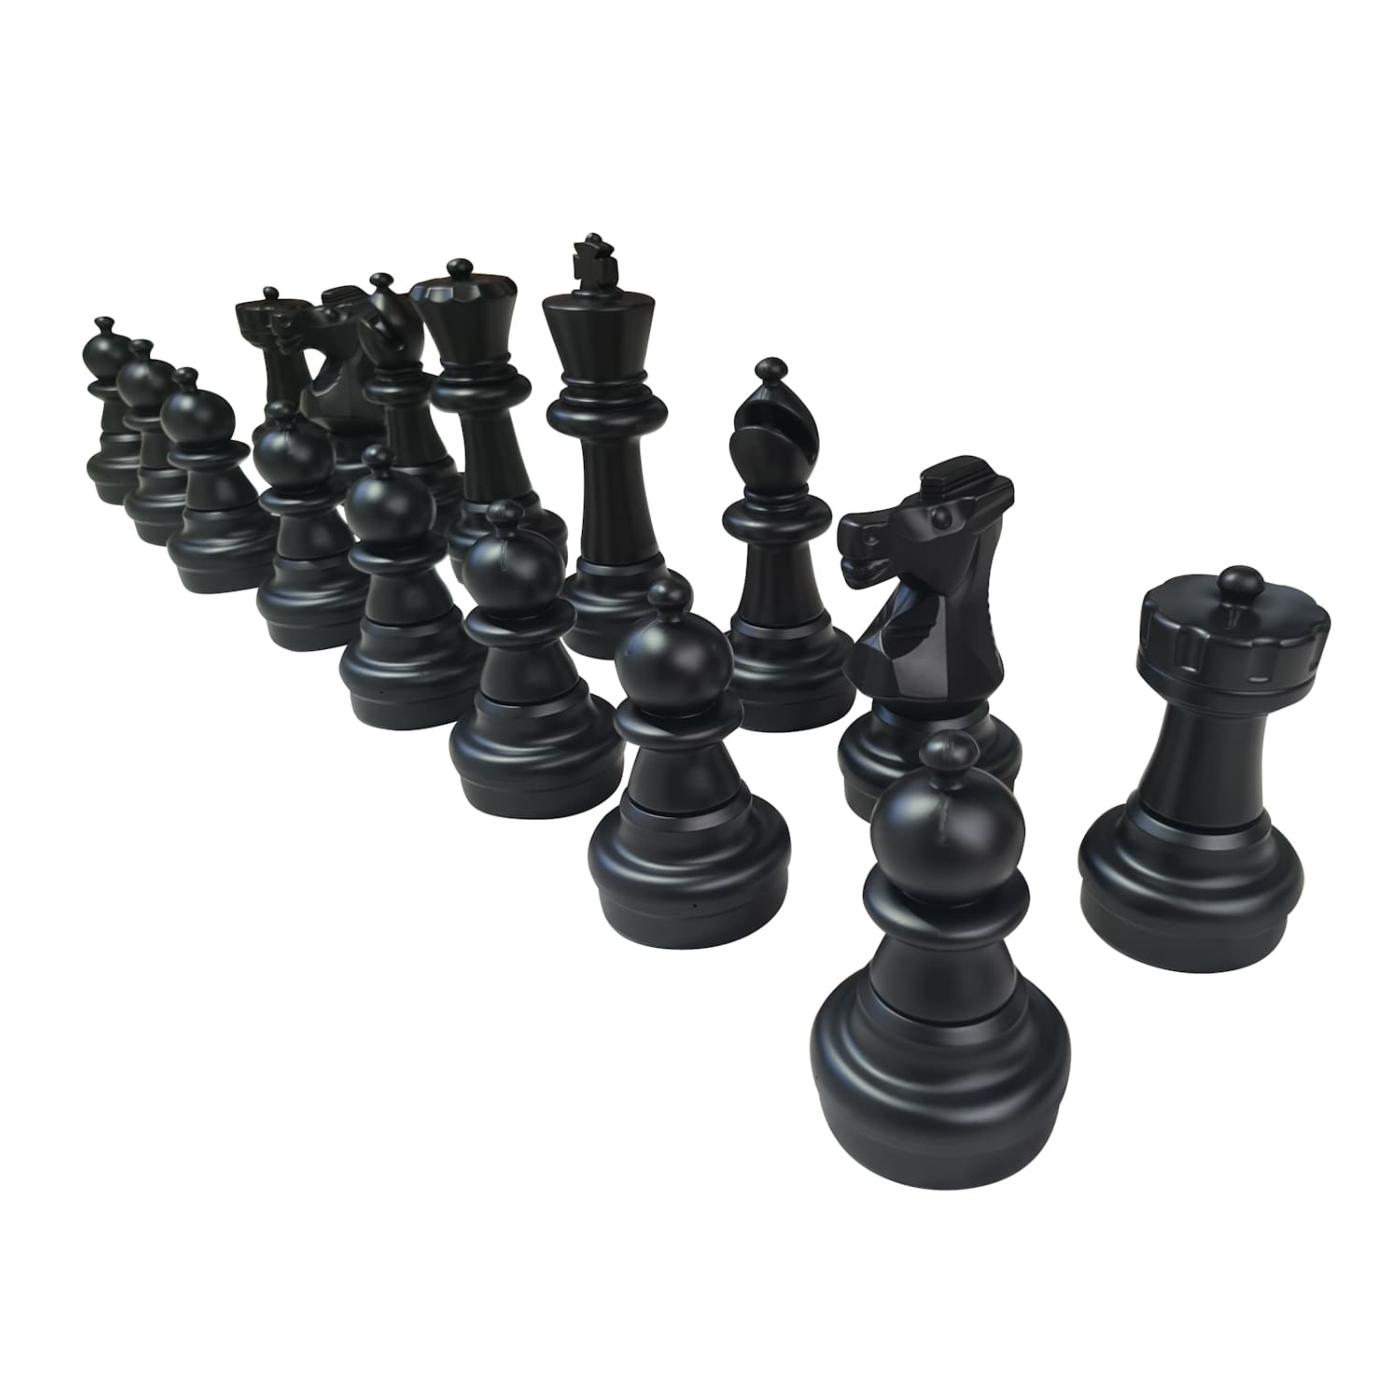 Cada pieza de ajedrez 